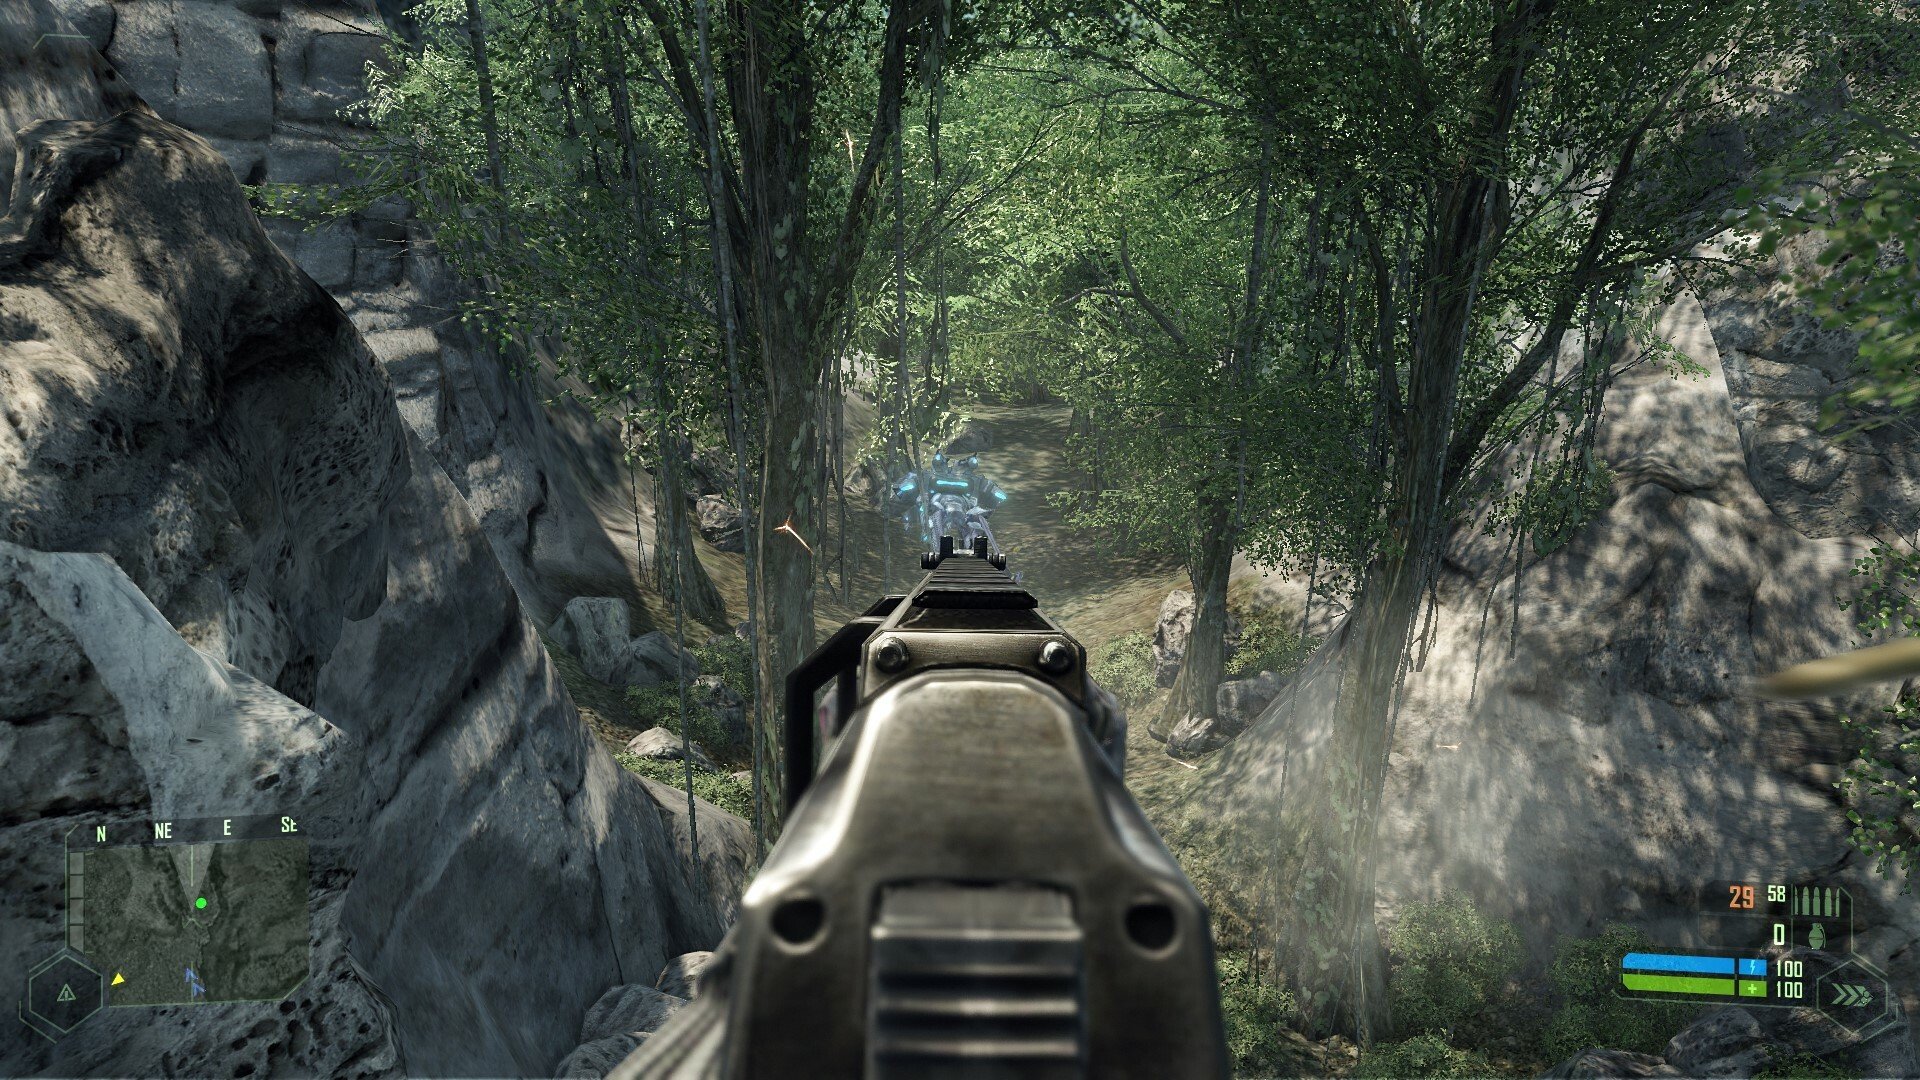 Скриншот 2 к игре Crysis v1.1.1.6156 [GOG] (2007)